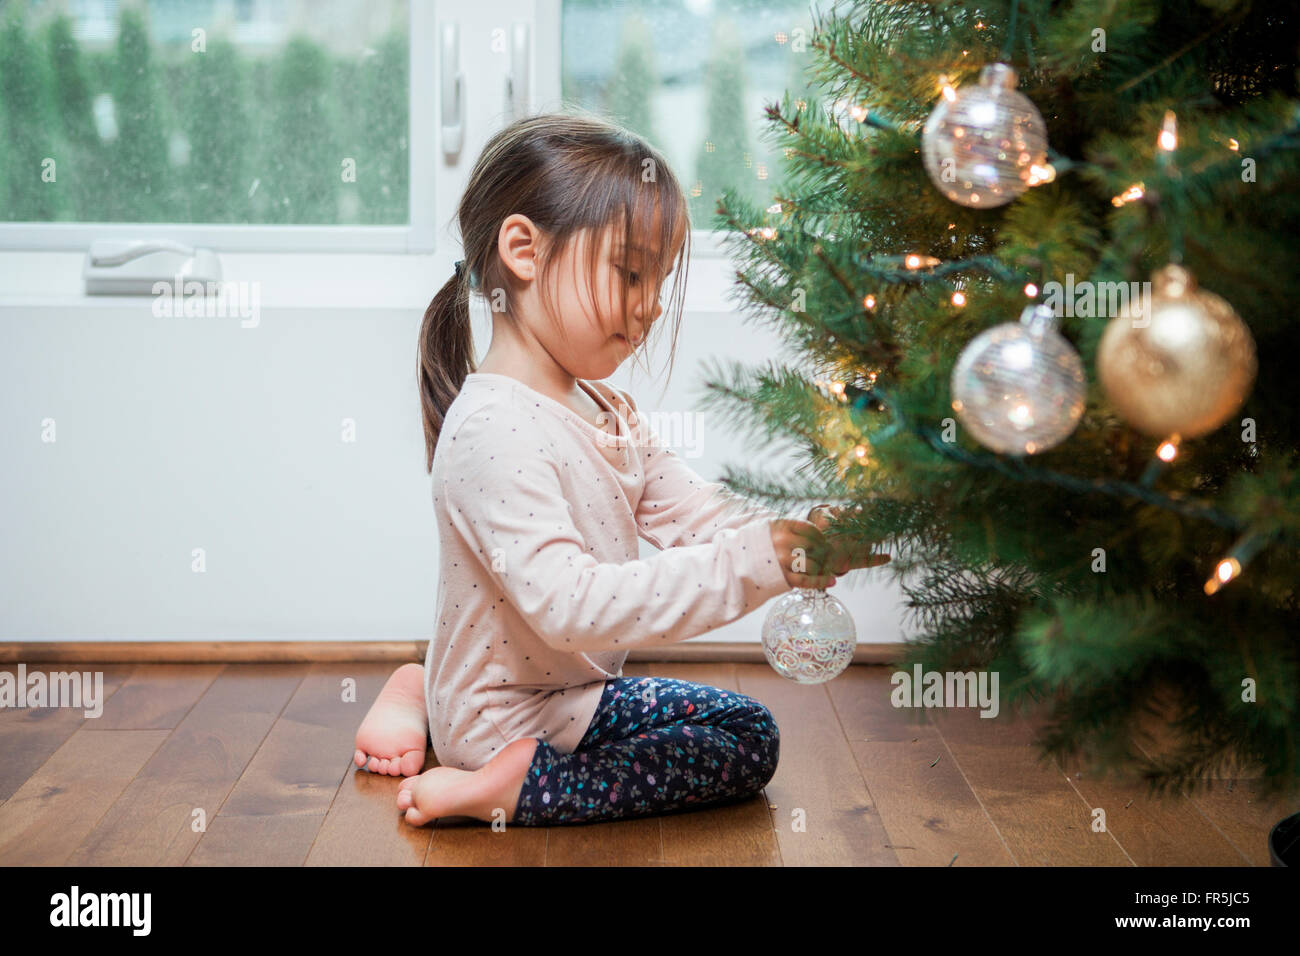 Kleinkind Mädchen schmücken Weihnachtsbaum Stockfoto